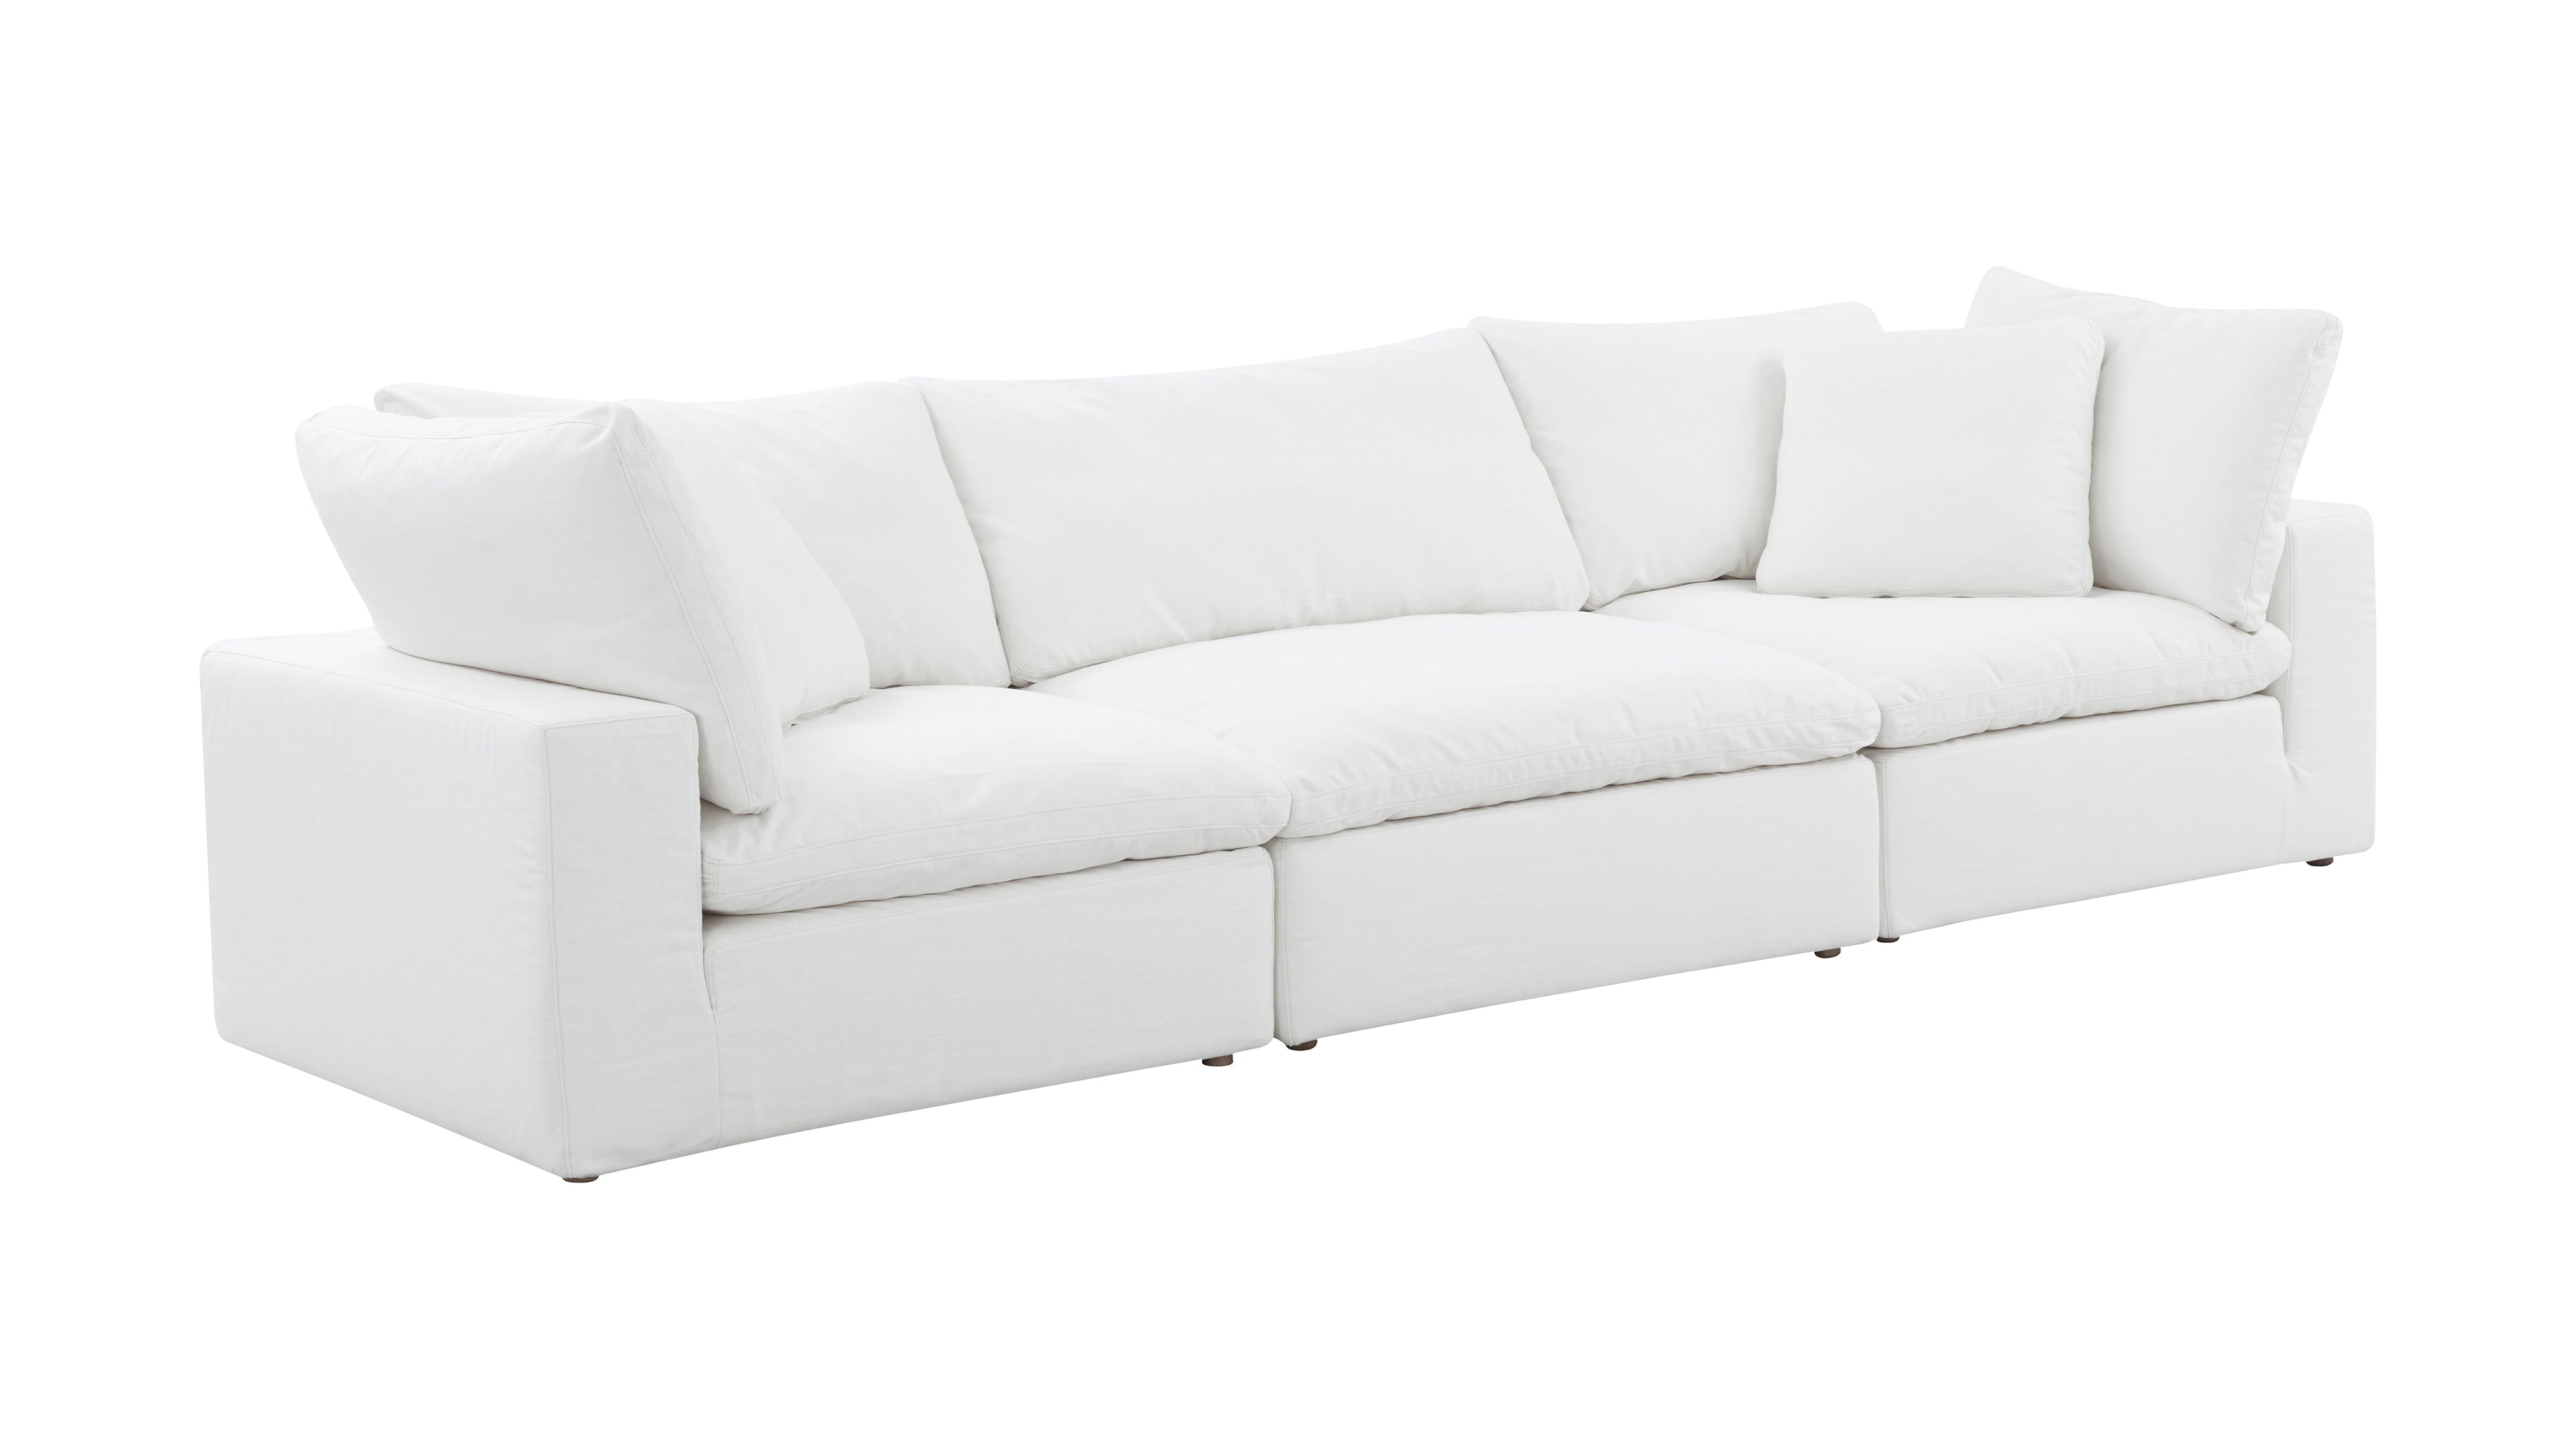 Movie Night™ 3-Piece Modular Sofa, Standard, Brie - Image 4